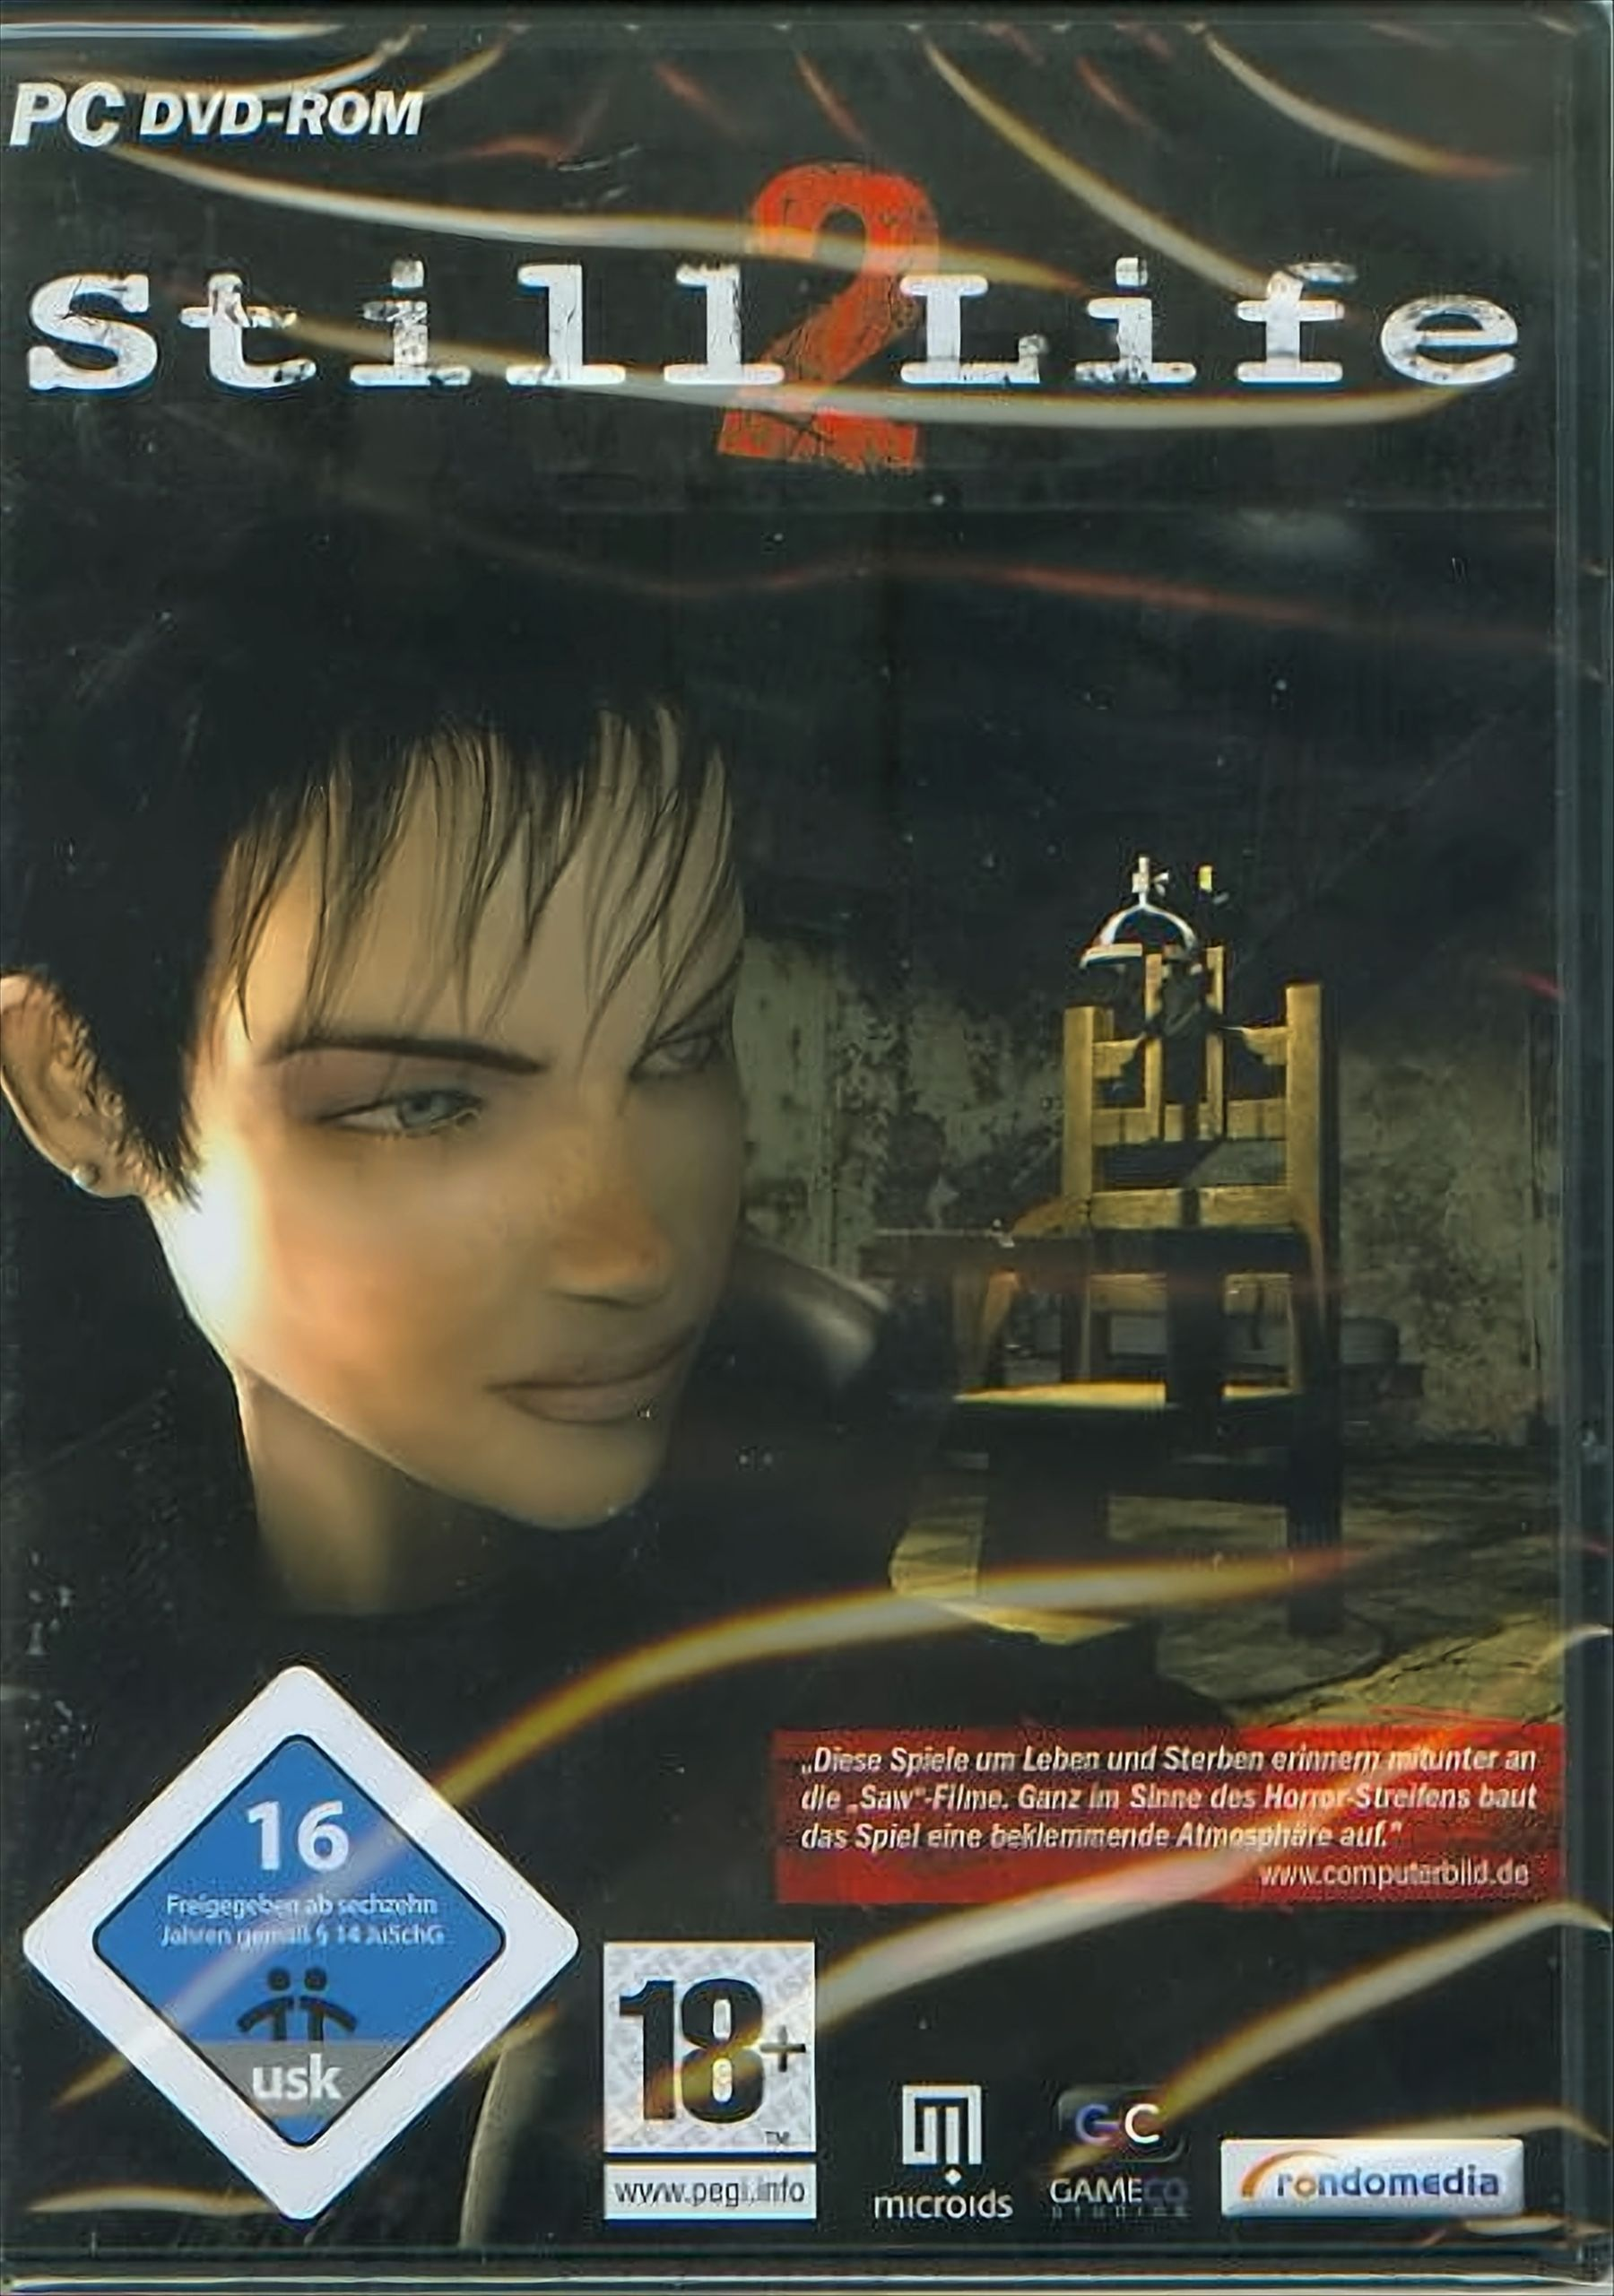 DVD-ROM [PC] 2 Still - Life